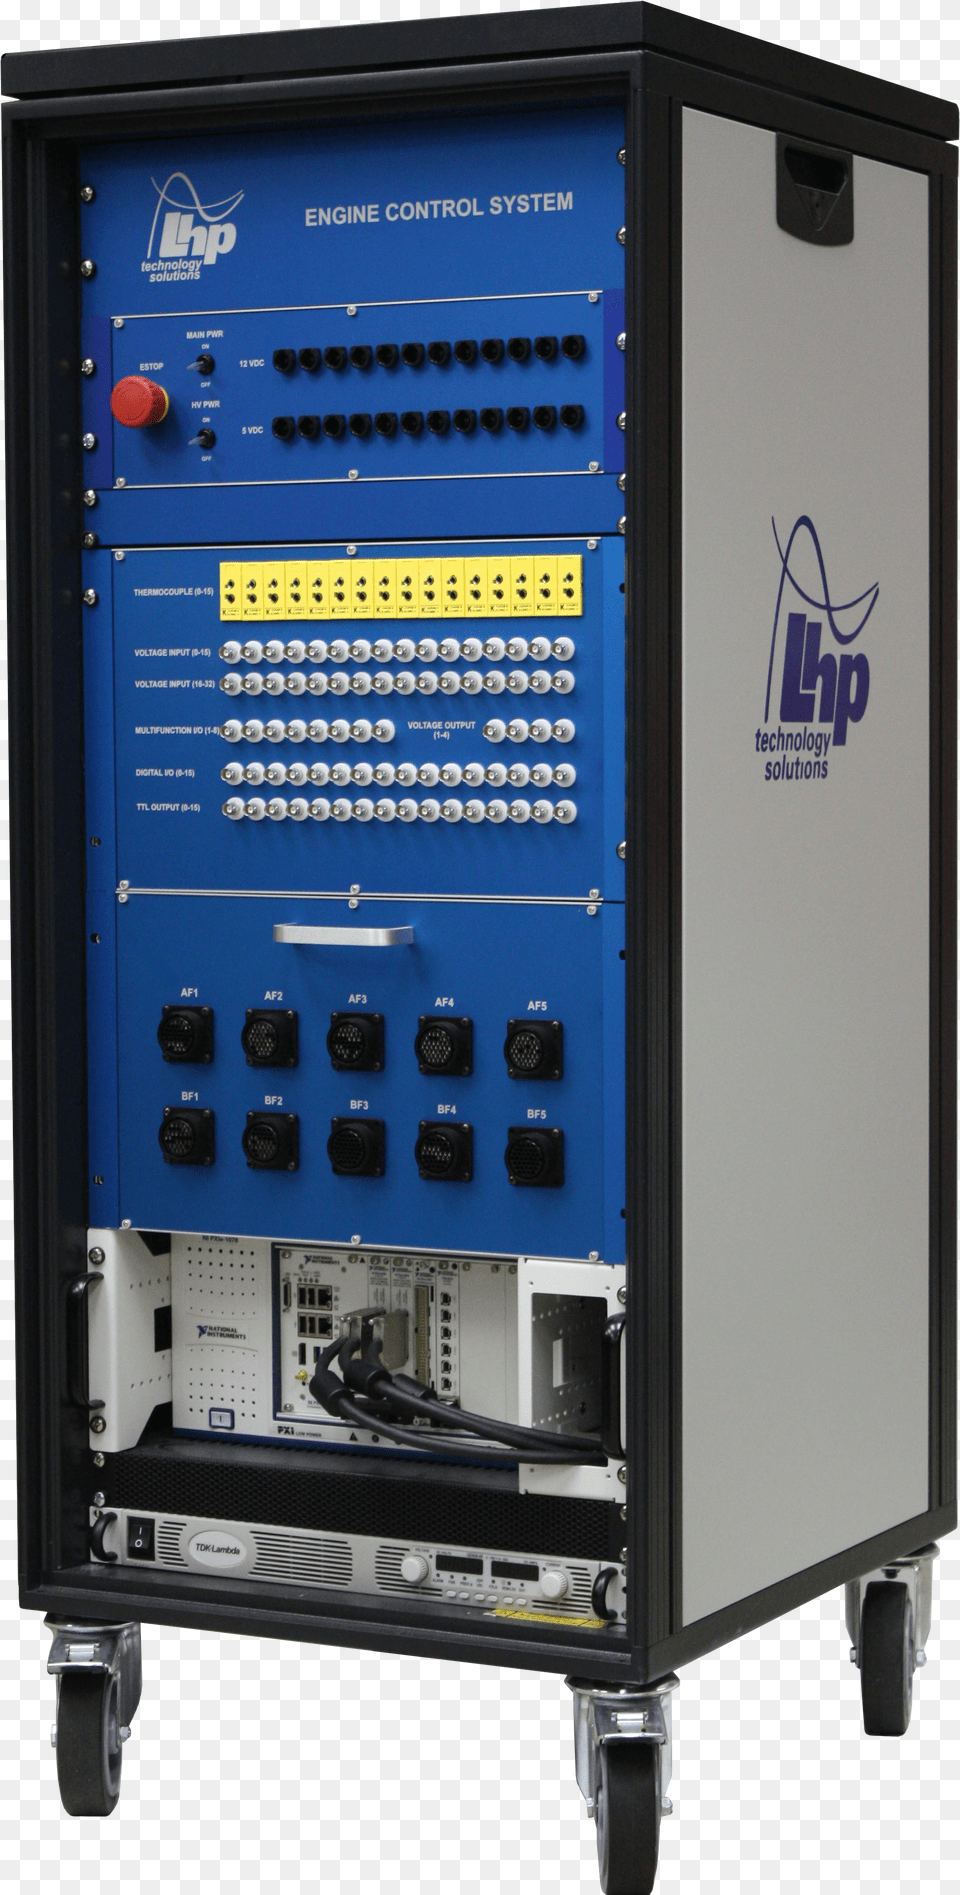 Ecs Plus Control Panel Png Image